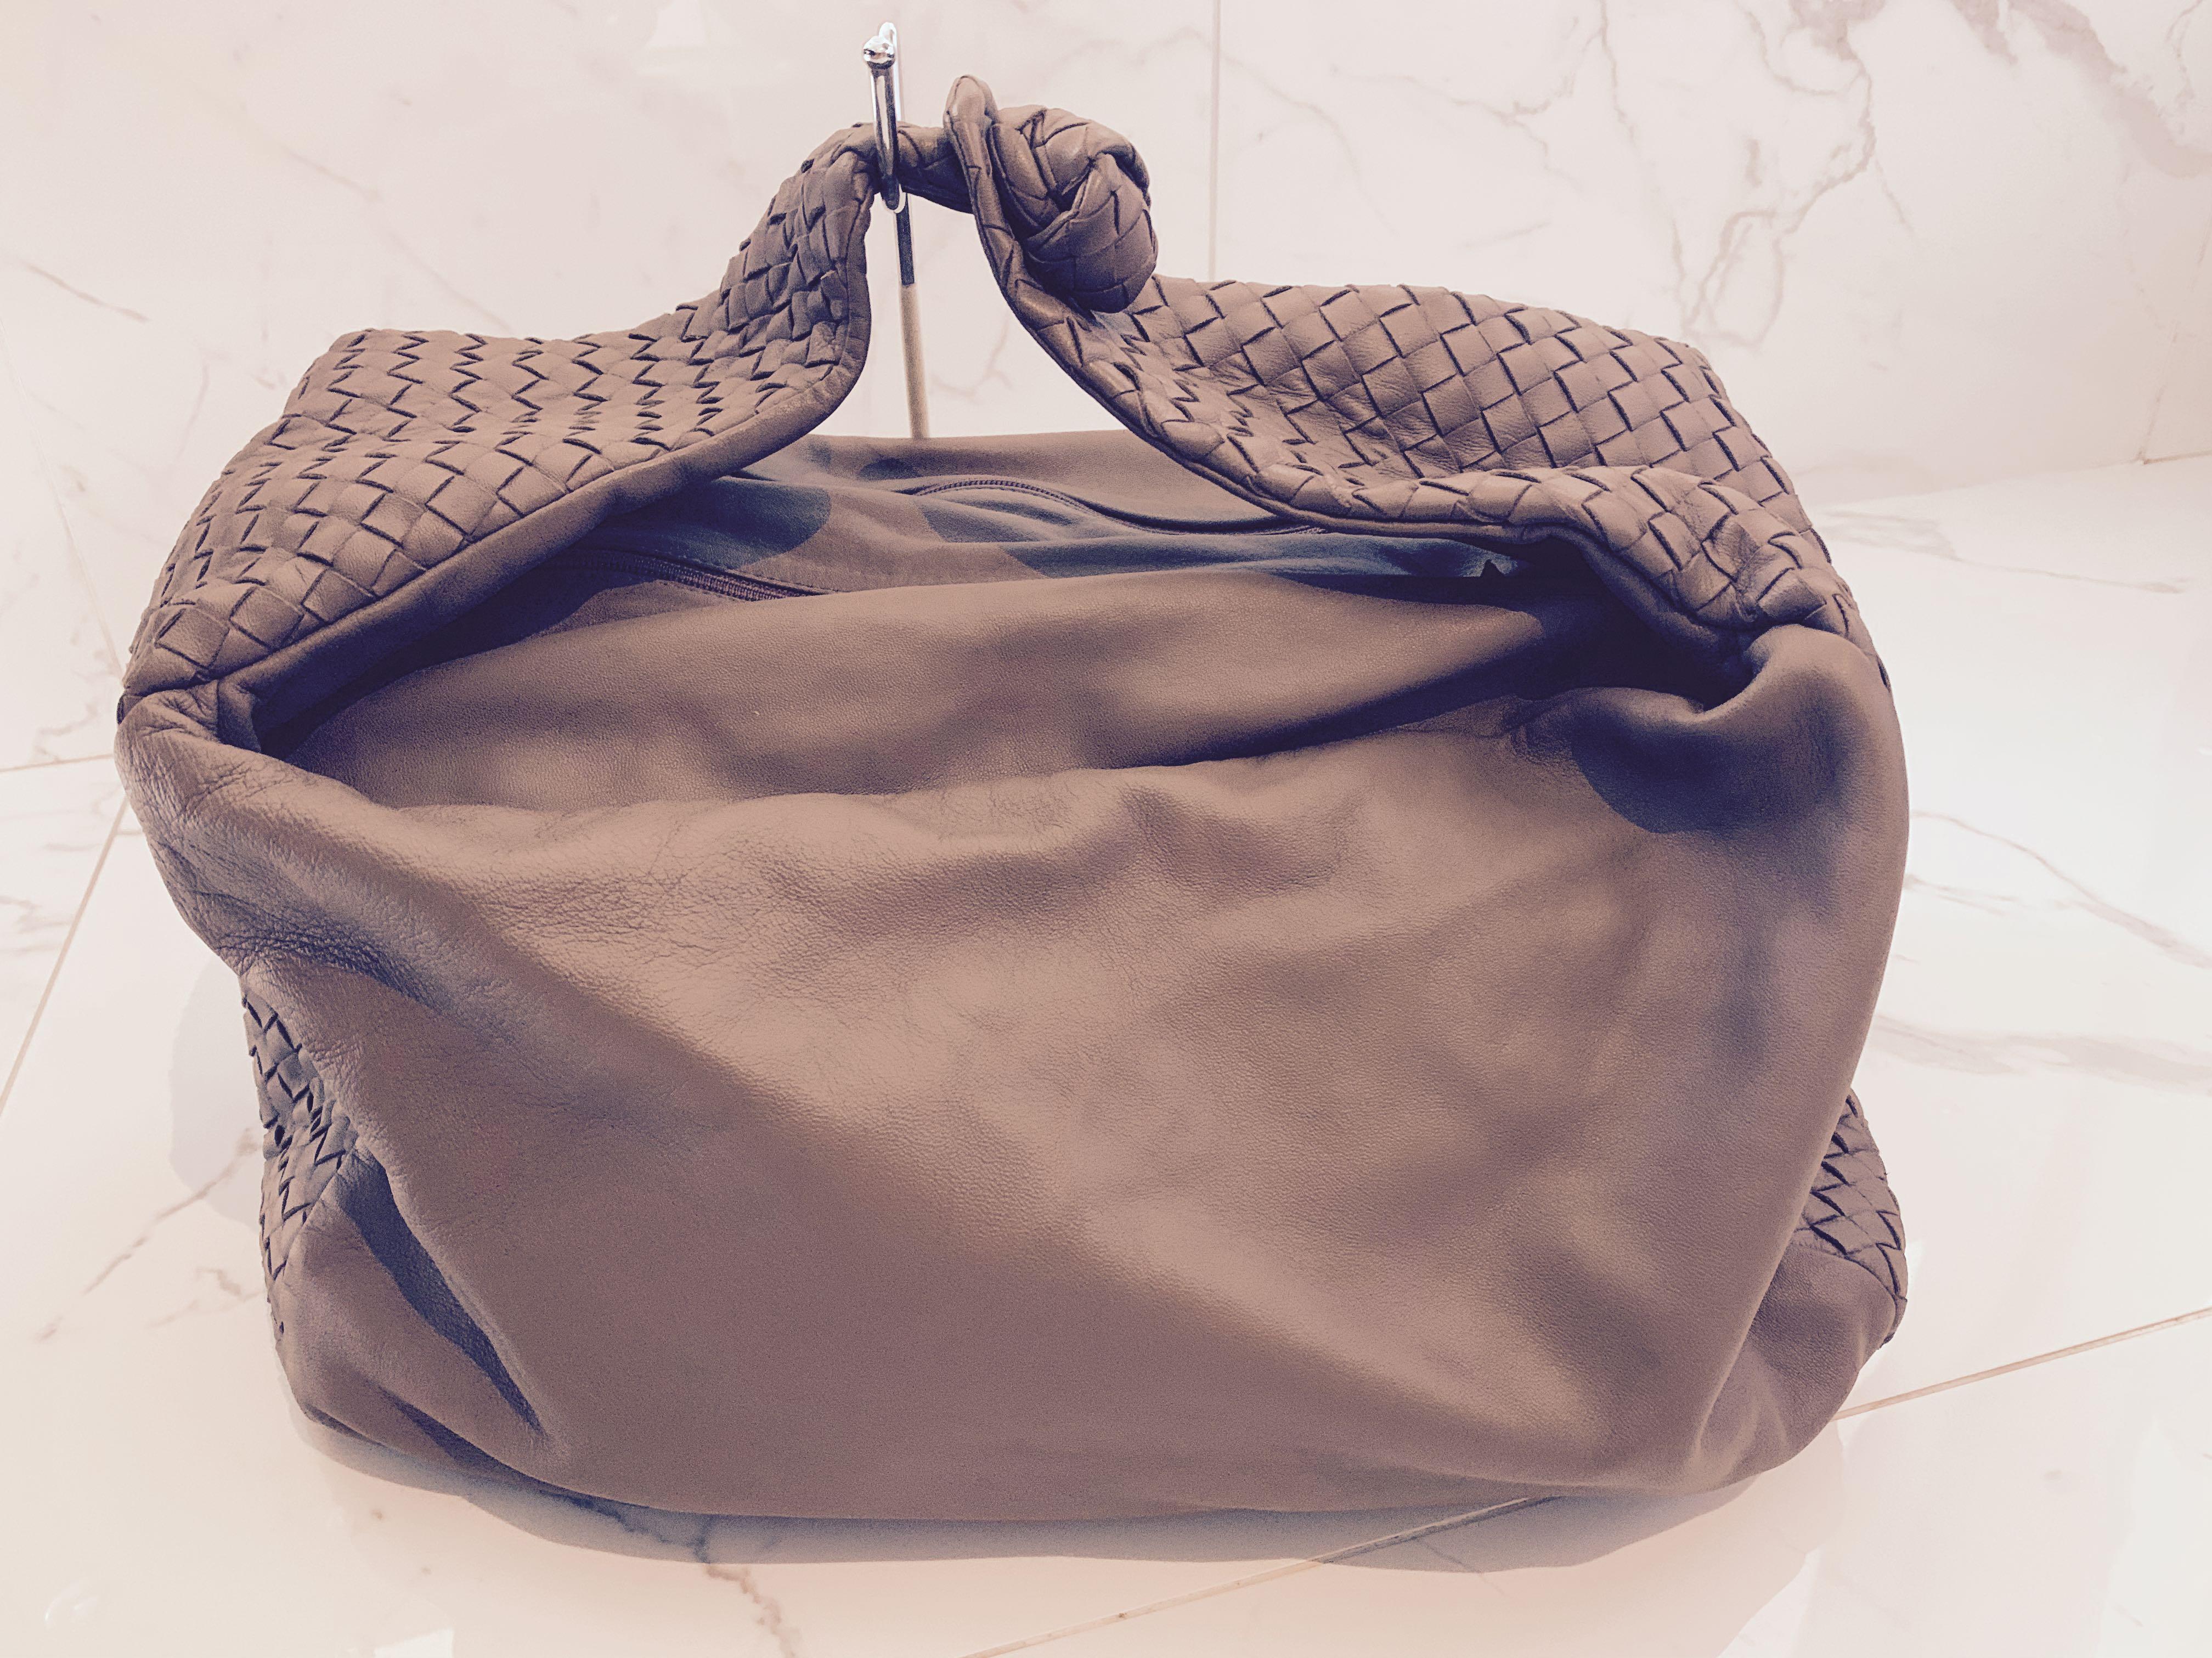 Bottega Veneta Bag Women S Fashion Bags Wallets Handbags On Carousell